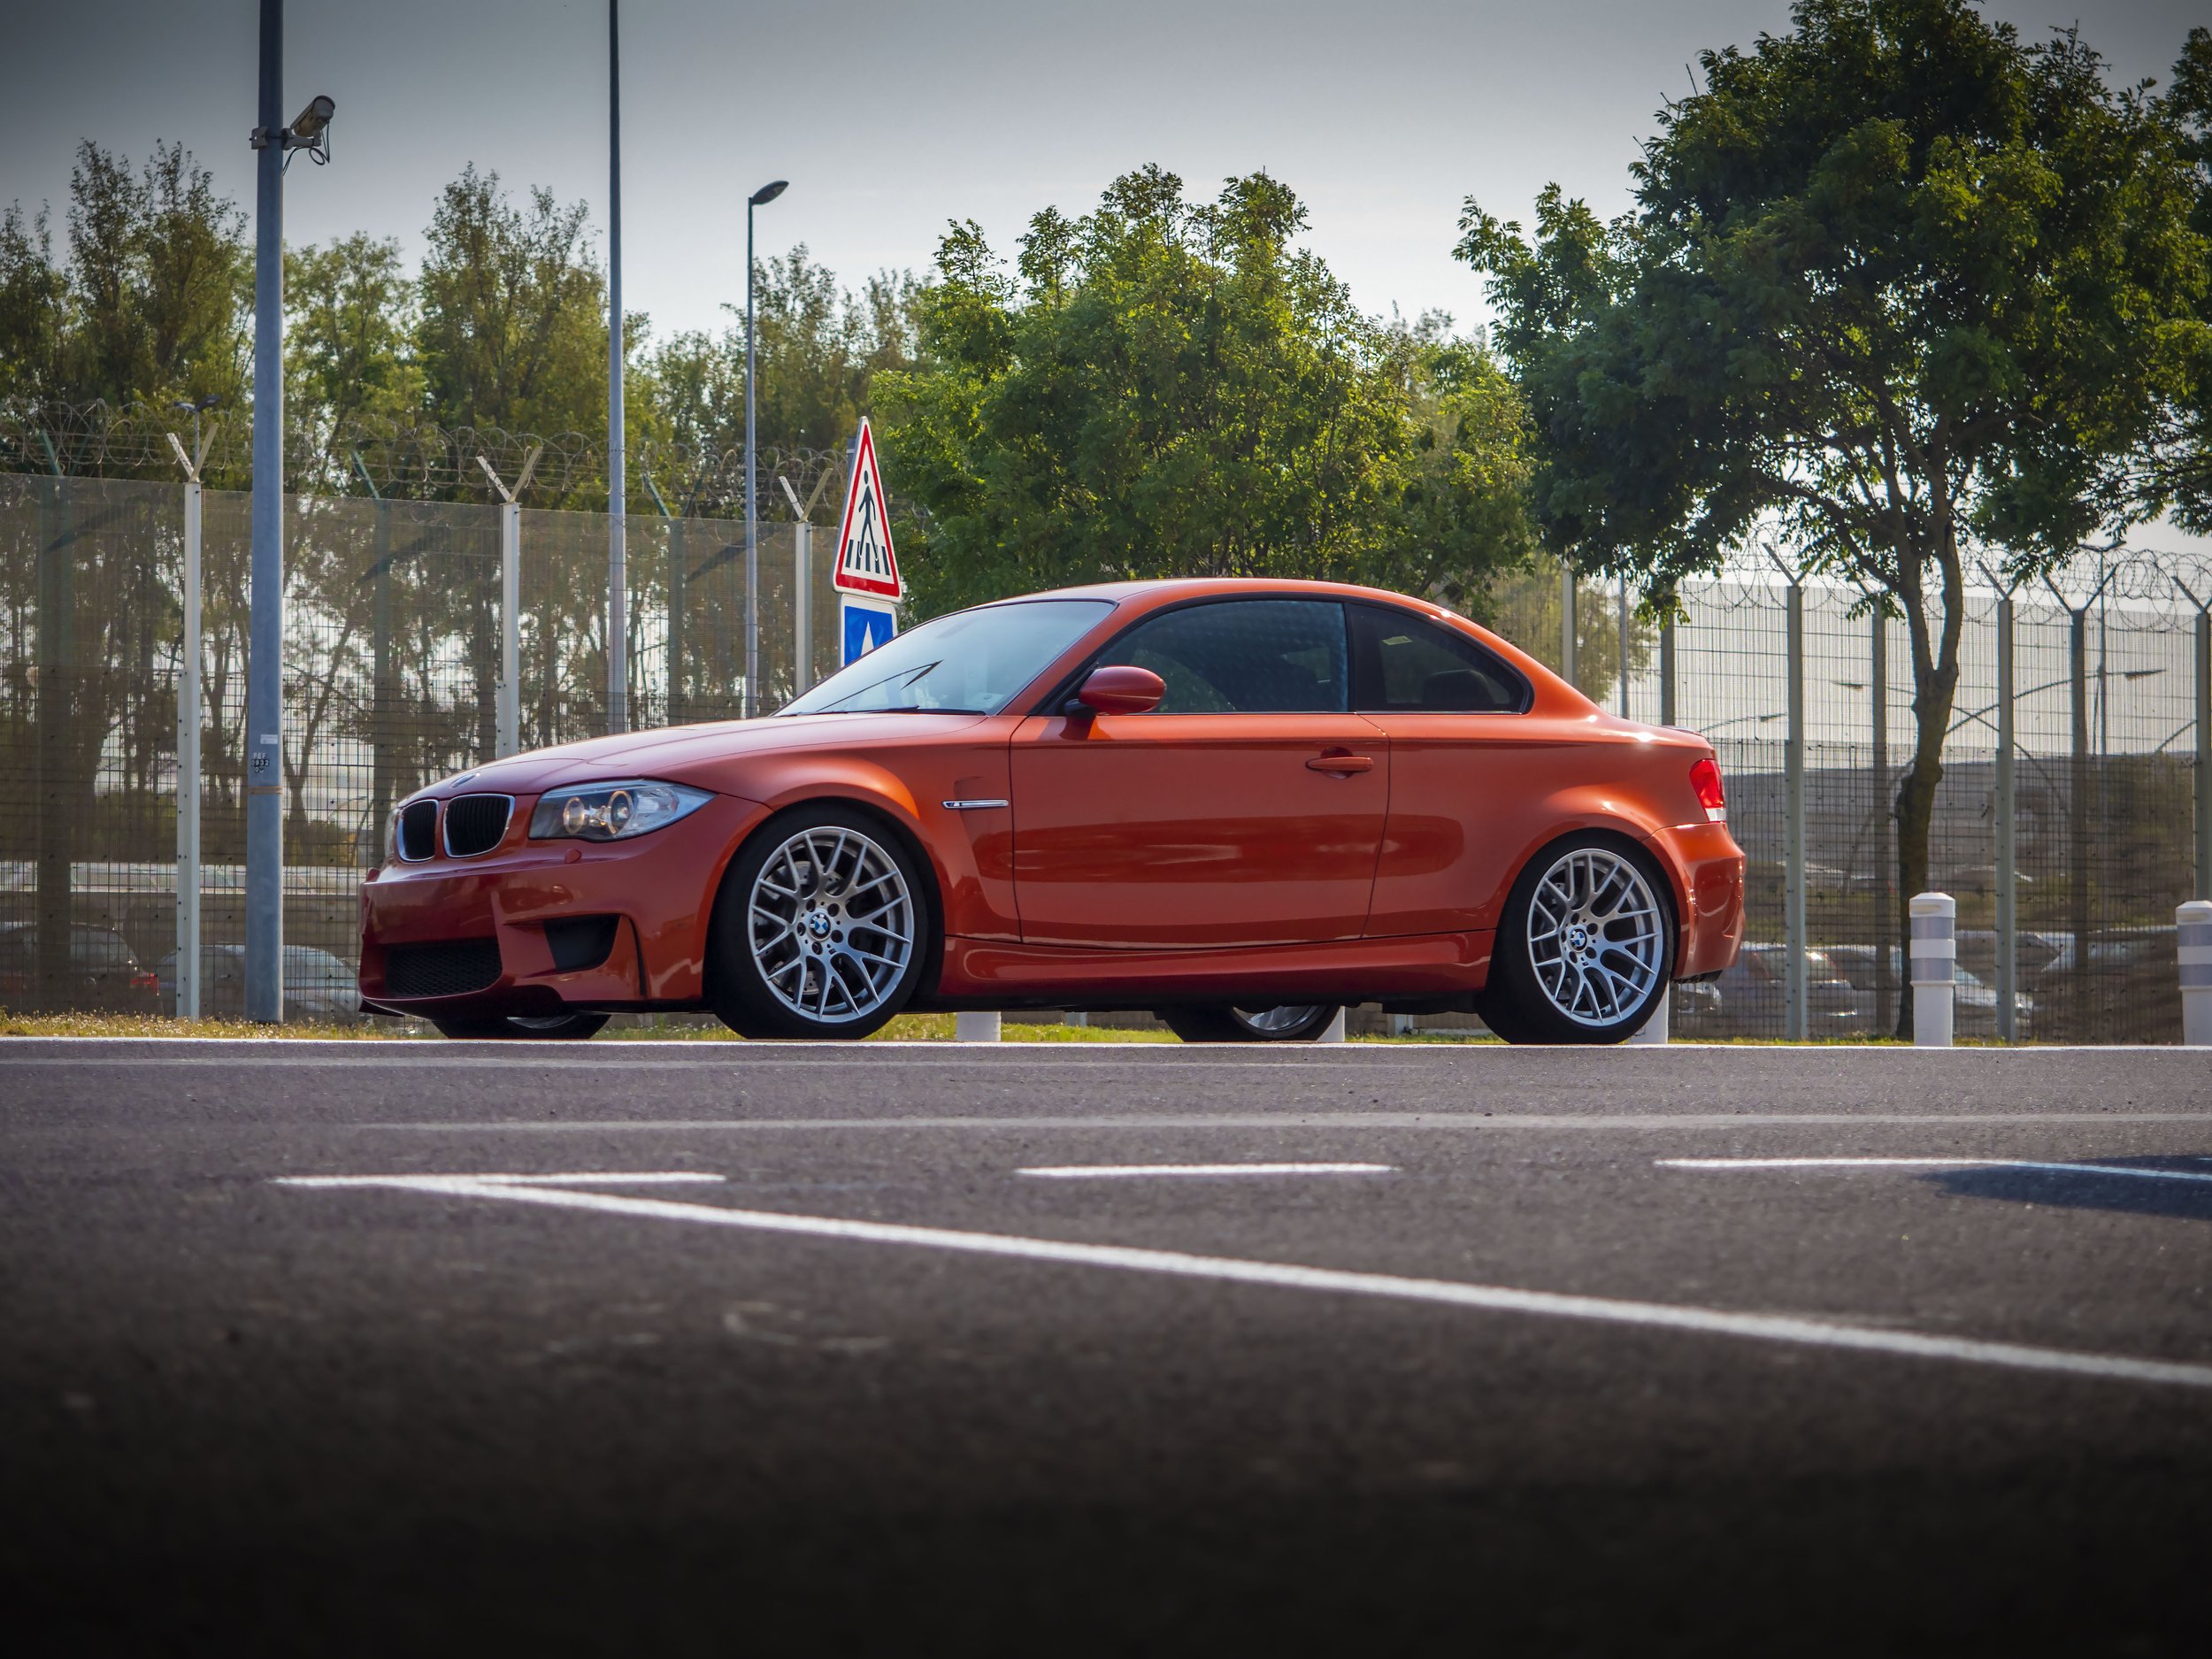 BMW 1M Low Side Angle 4x3.jpg